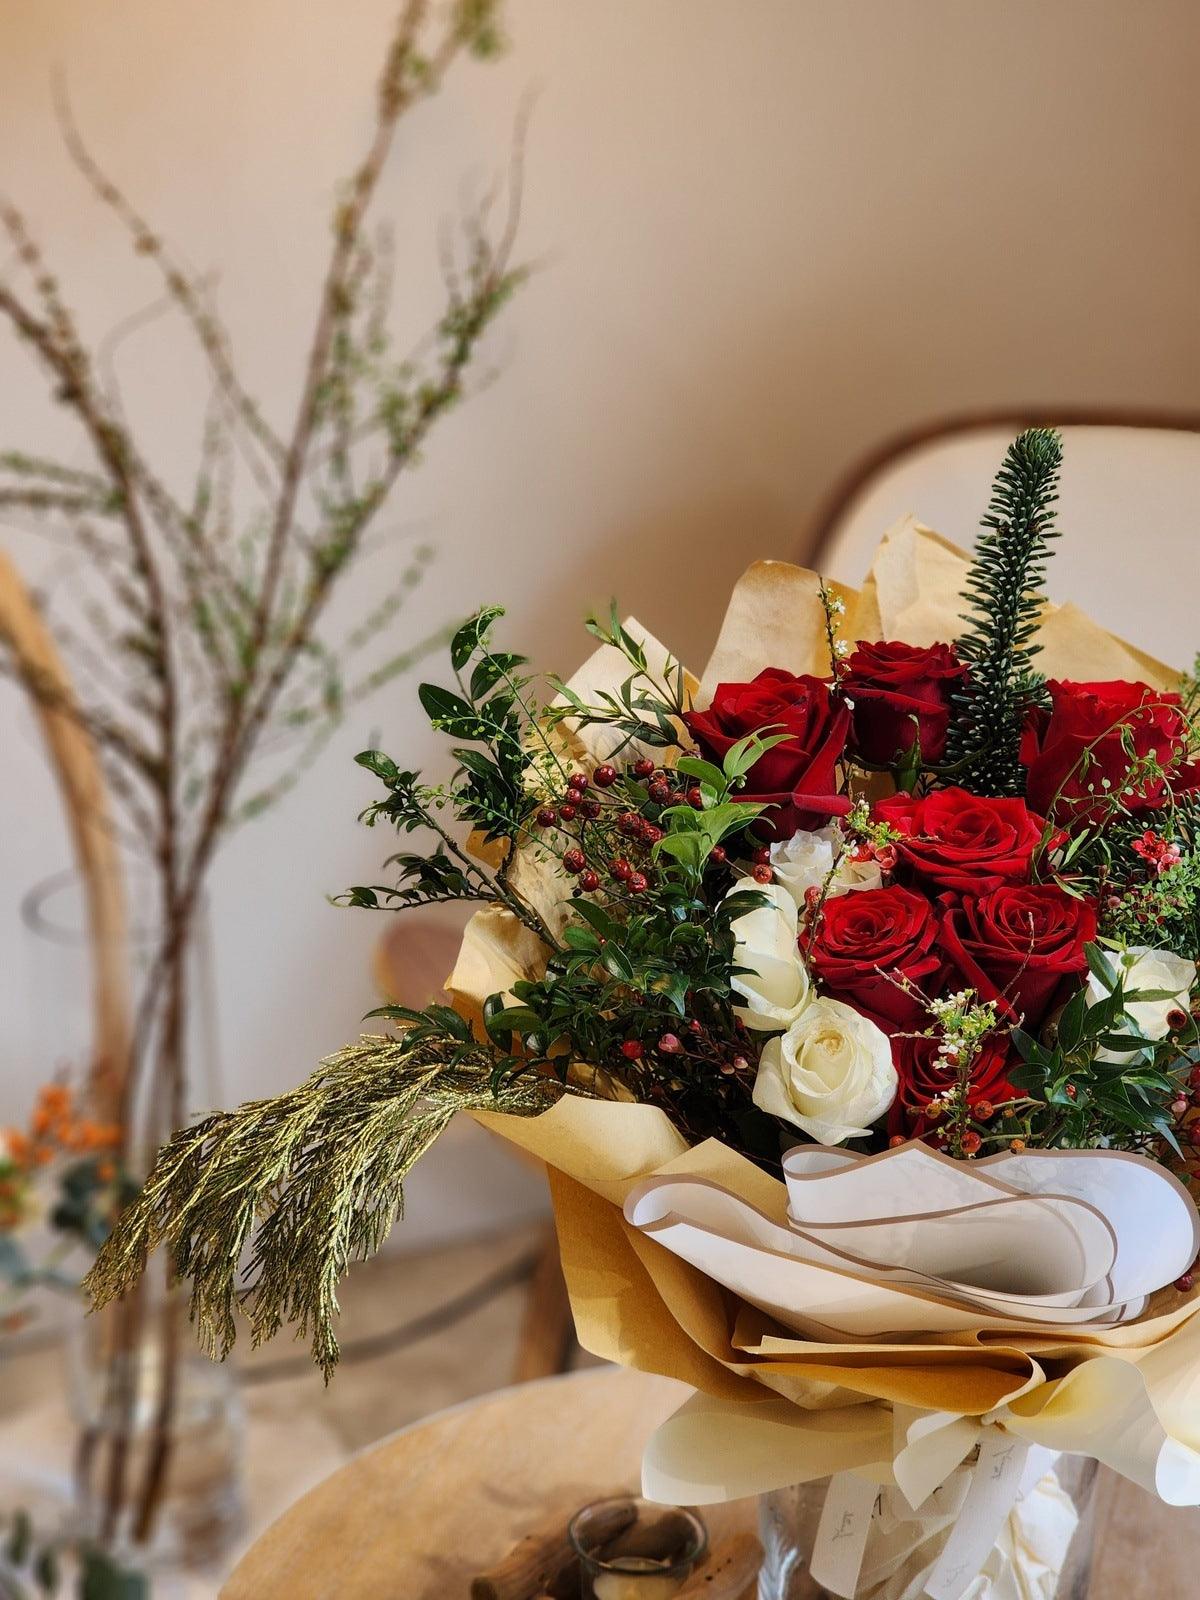  紅玫瑰 紅玫瑰花束 Lavish Florist 即日送貨 香港花店 網上花店